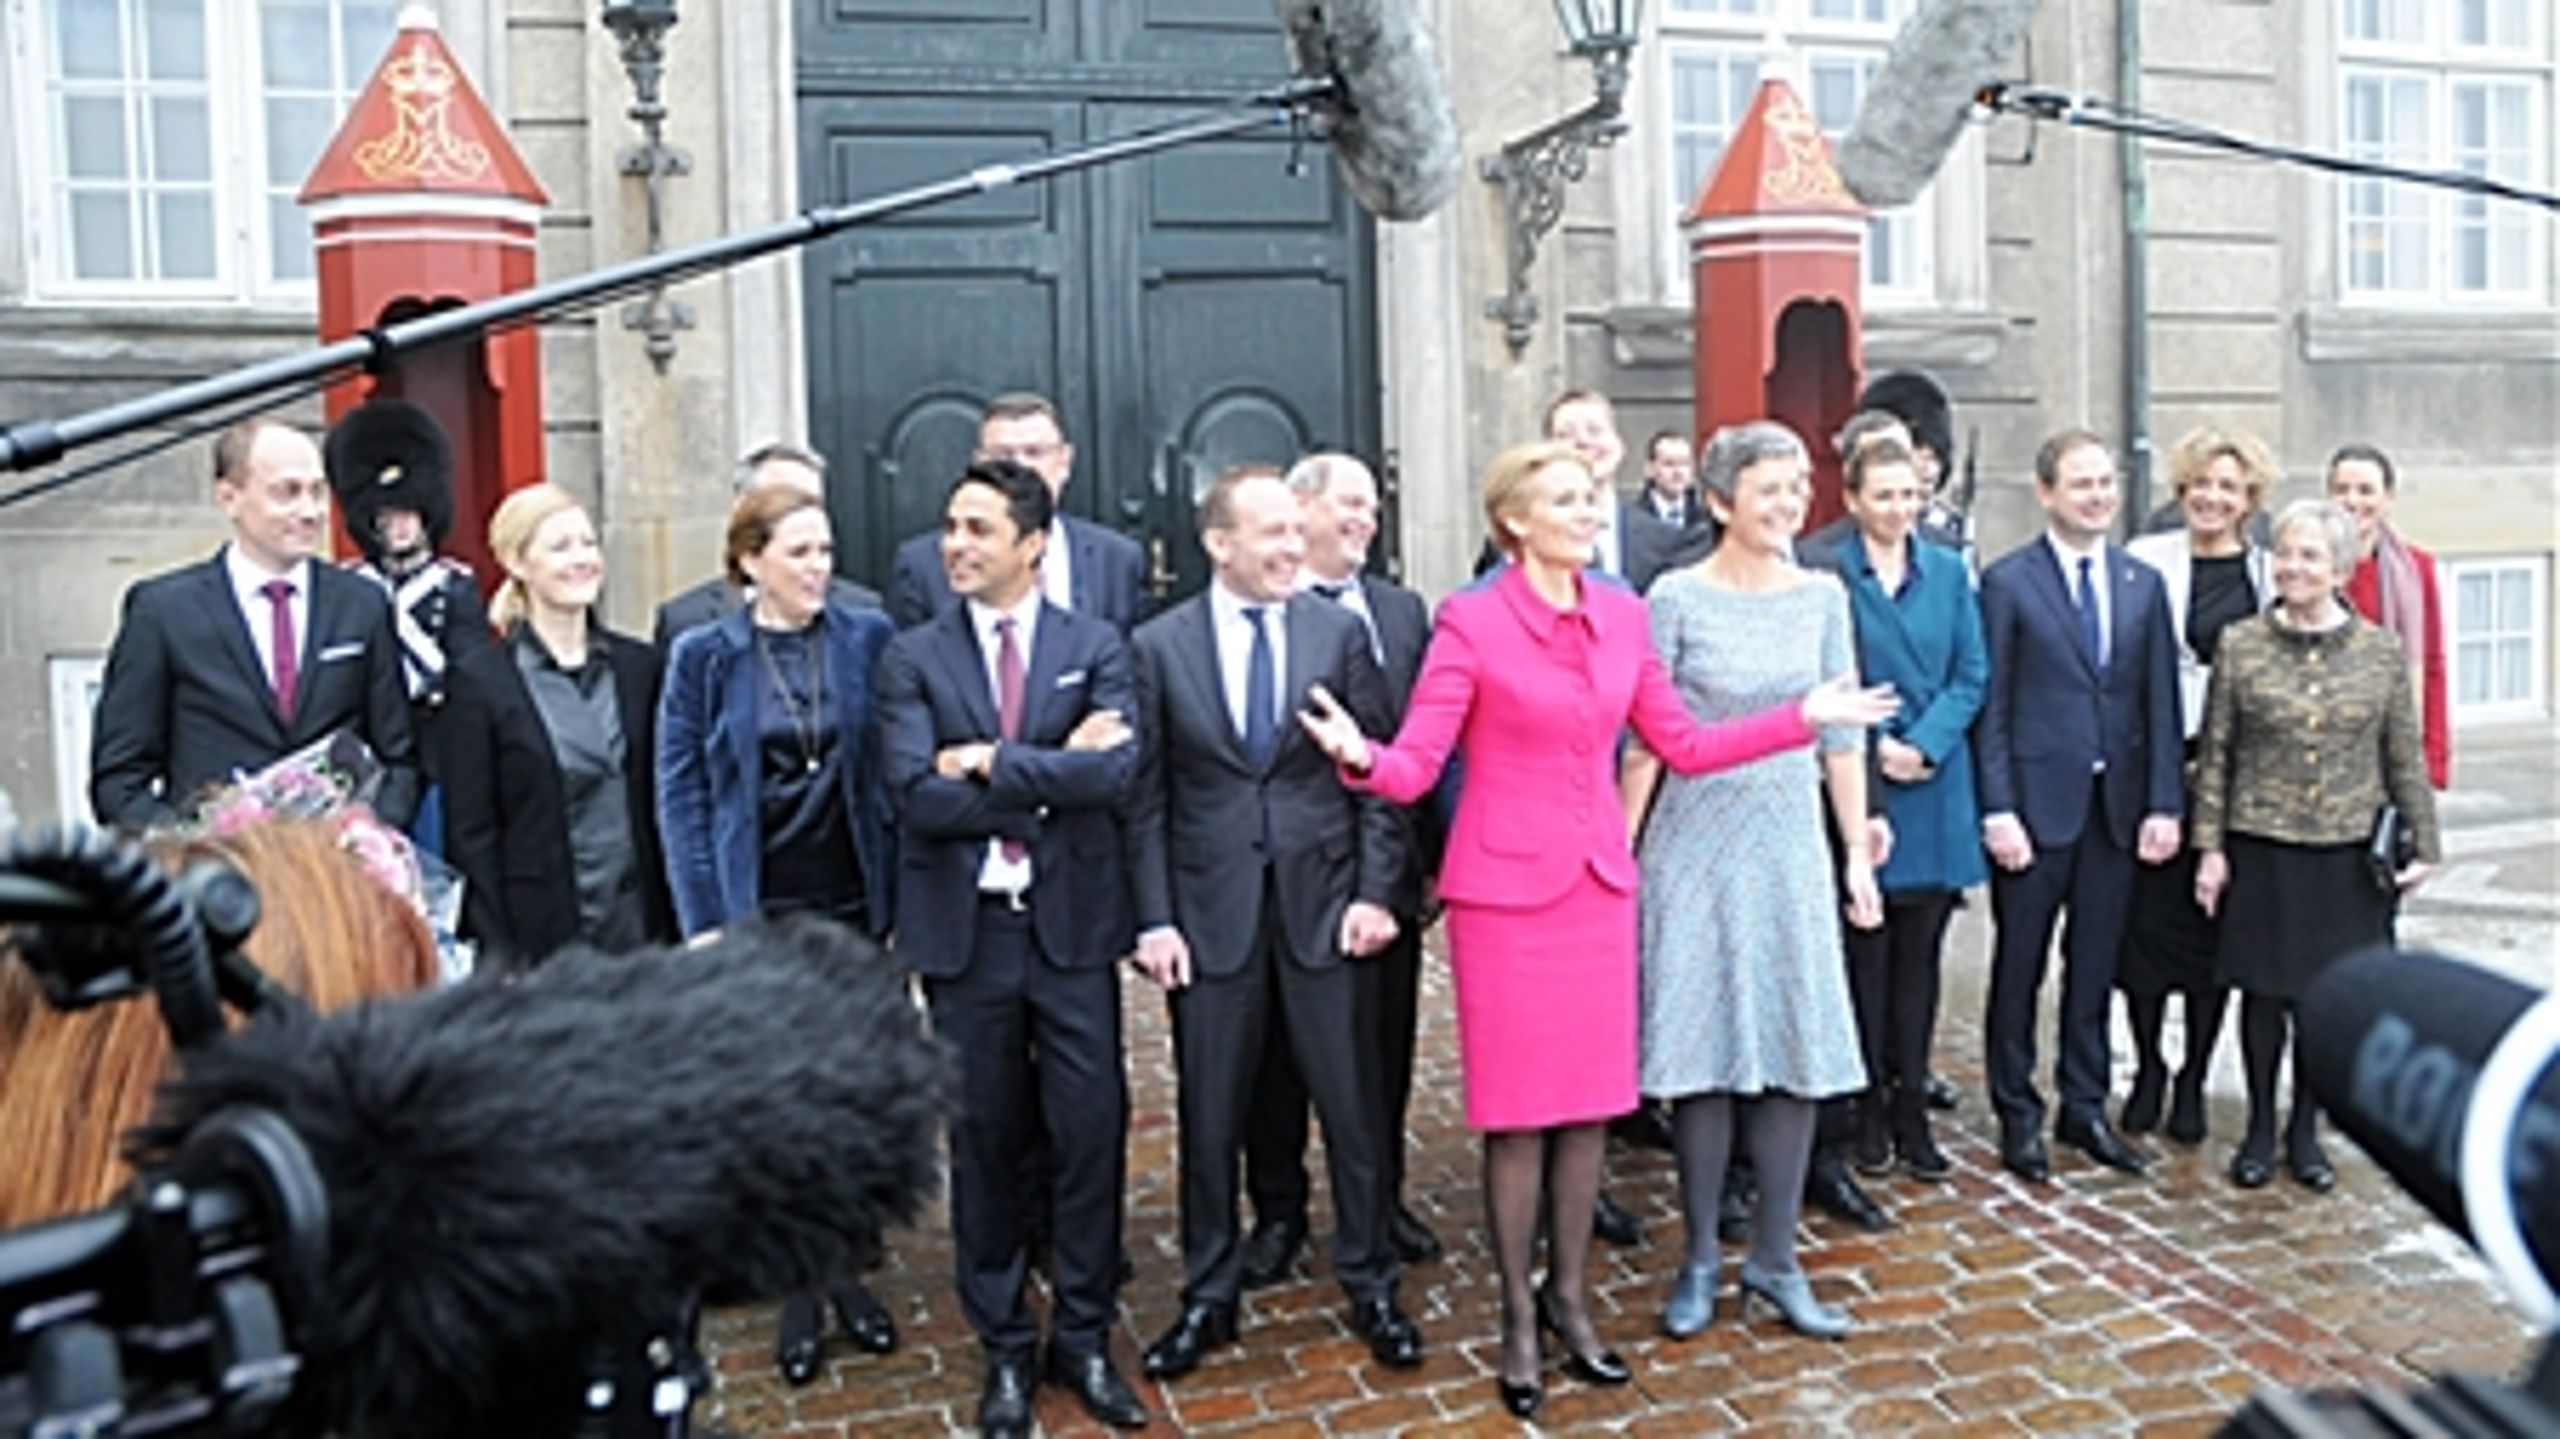 Statsminister Helle Thorning-Schmidt (S) håber på at få en ny begyndelse med dannelsen af en SR-regering i februar. Men vælgerne siver stadig til blå blok.